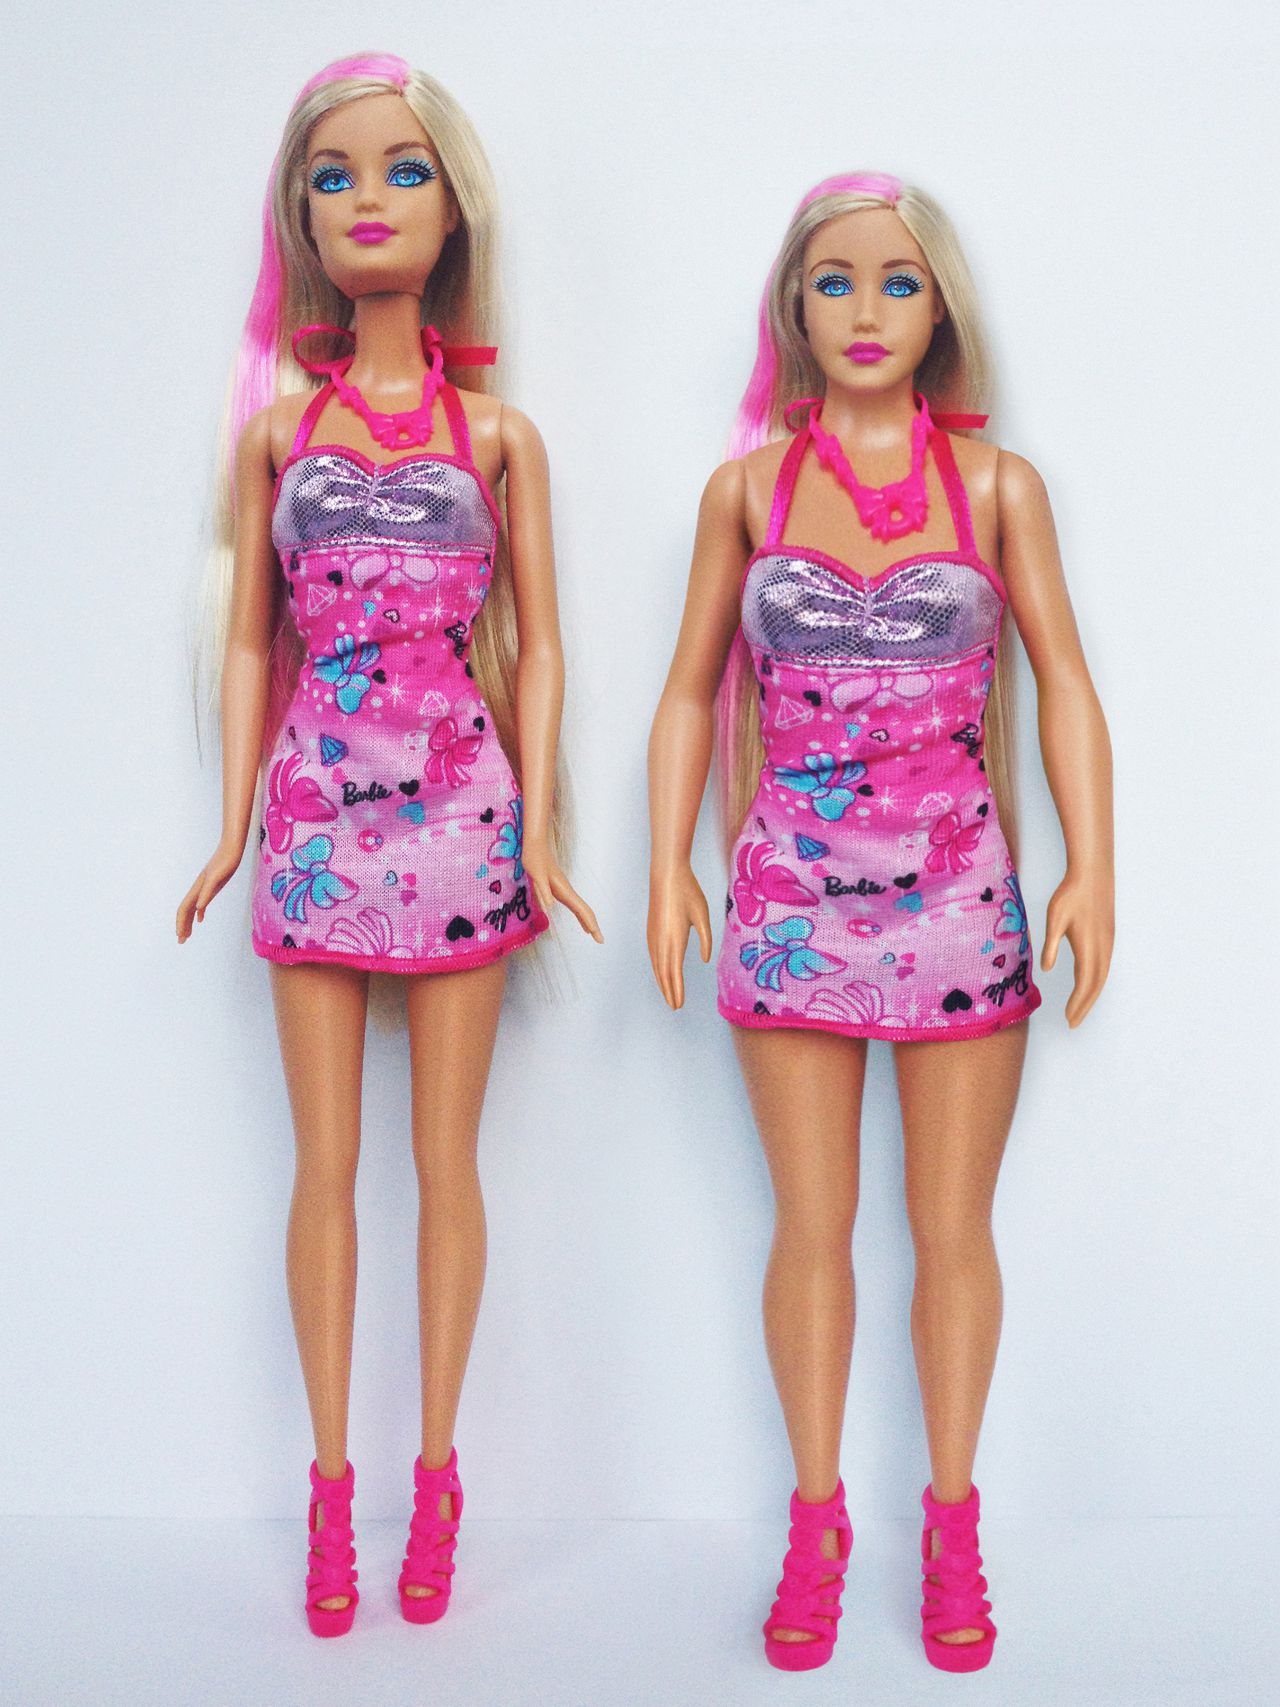 Handig Zielig Ploeg Barbie met echte vrouwenmaten - NRC